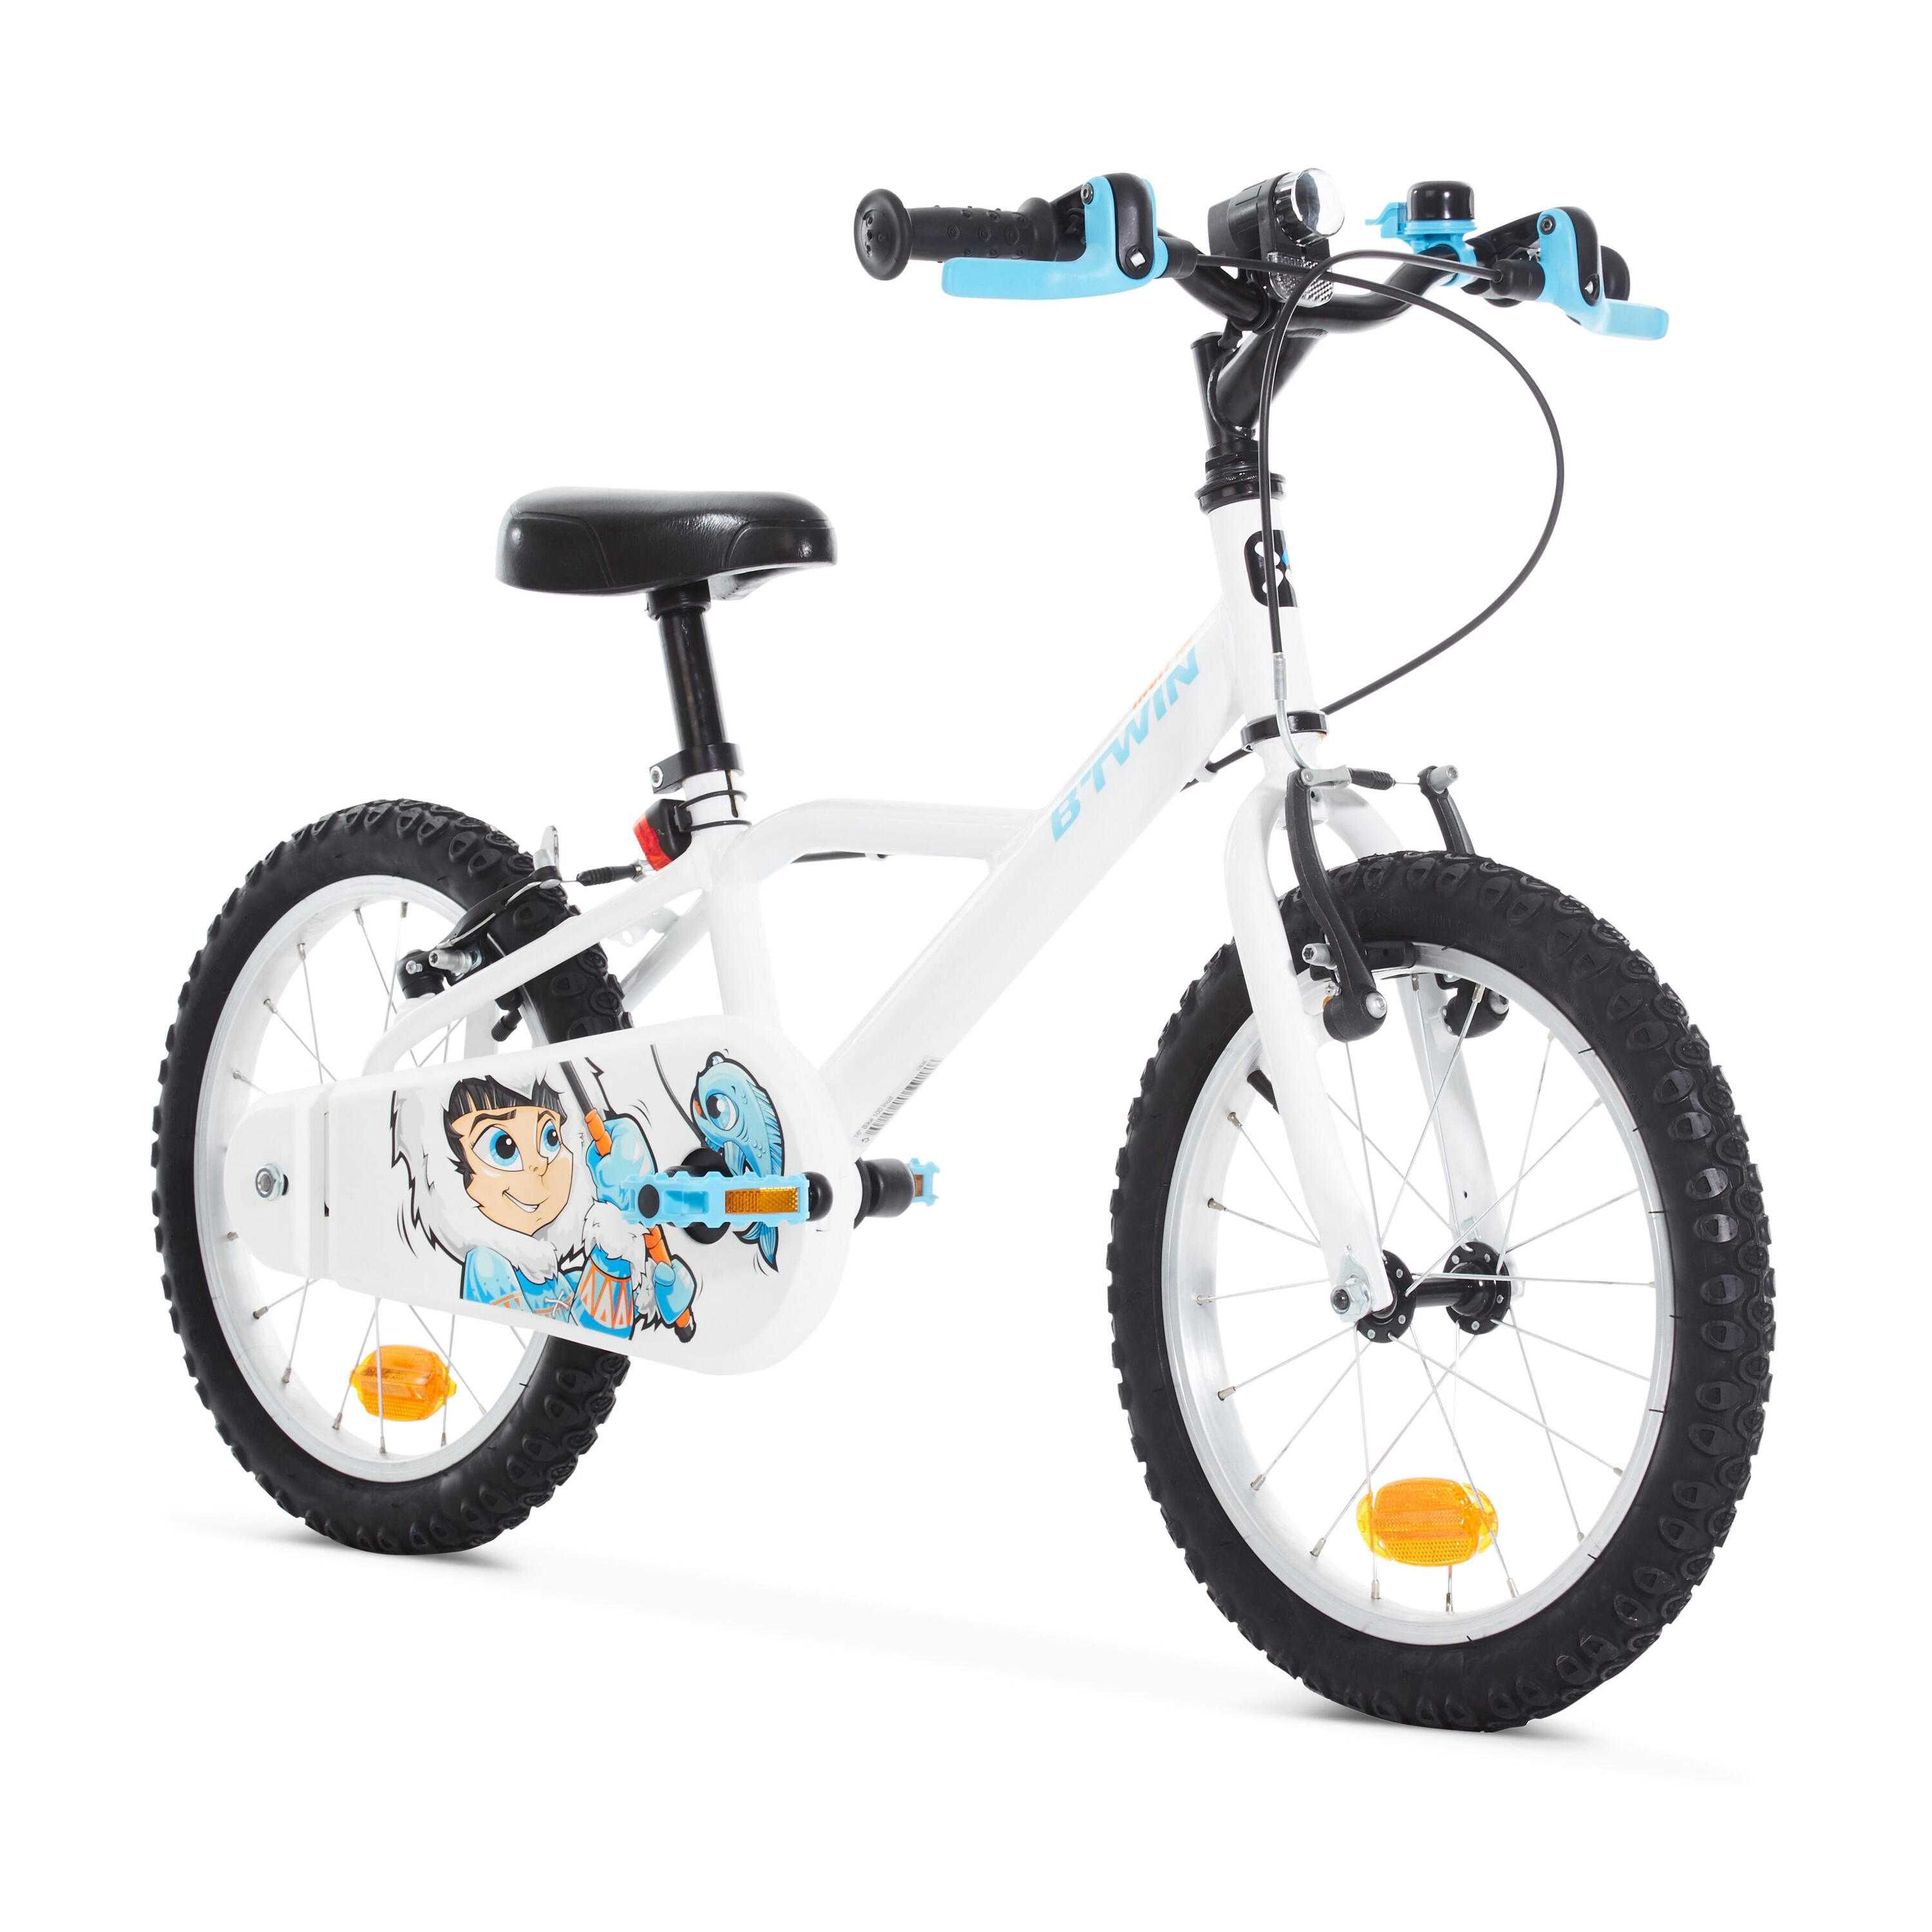 Bicicleta BTWIN para criança